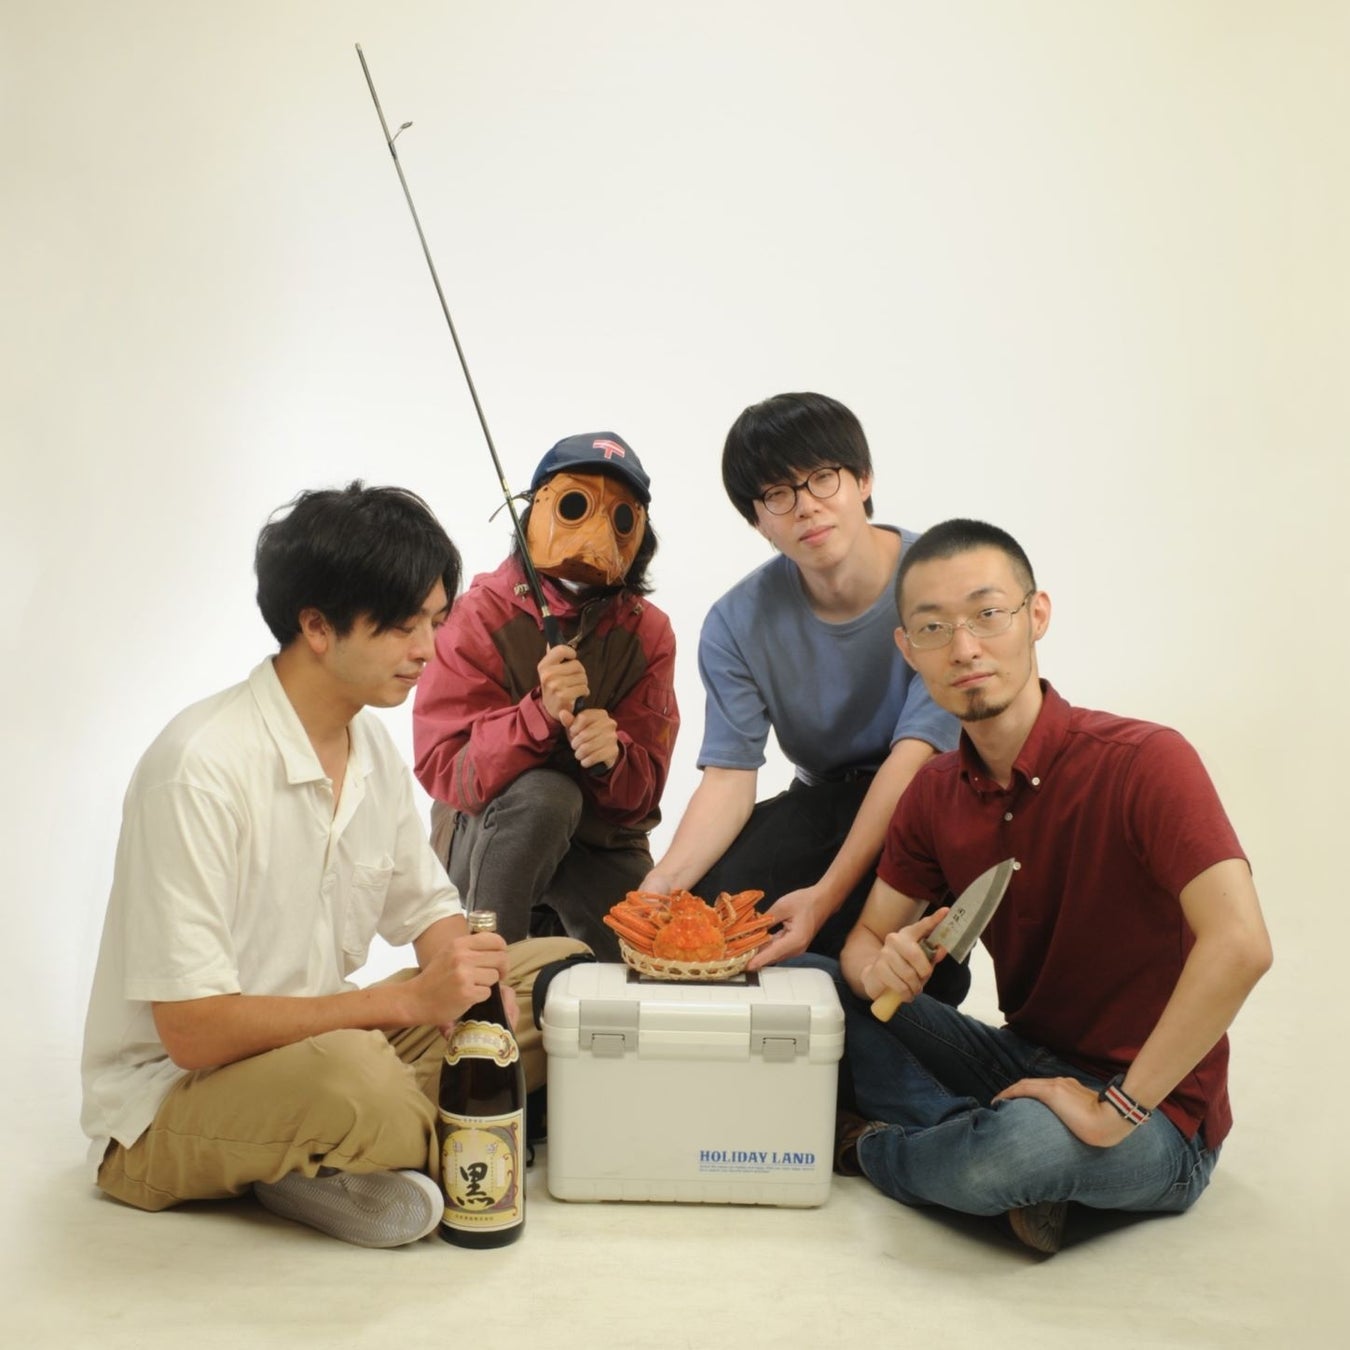 田中ヤコブ率いる四人組ロックバンド・家主、鮮烈なライブパフォーマンスを収めたライブアルバム『INTO THE DOOM』が遂に二枚組LPでフィジカルリリース決定！